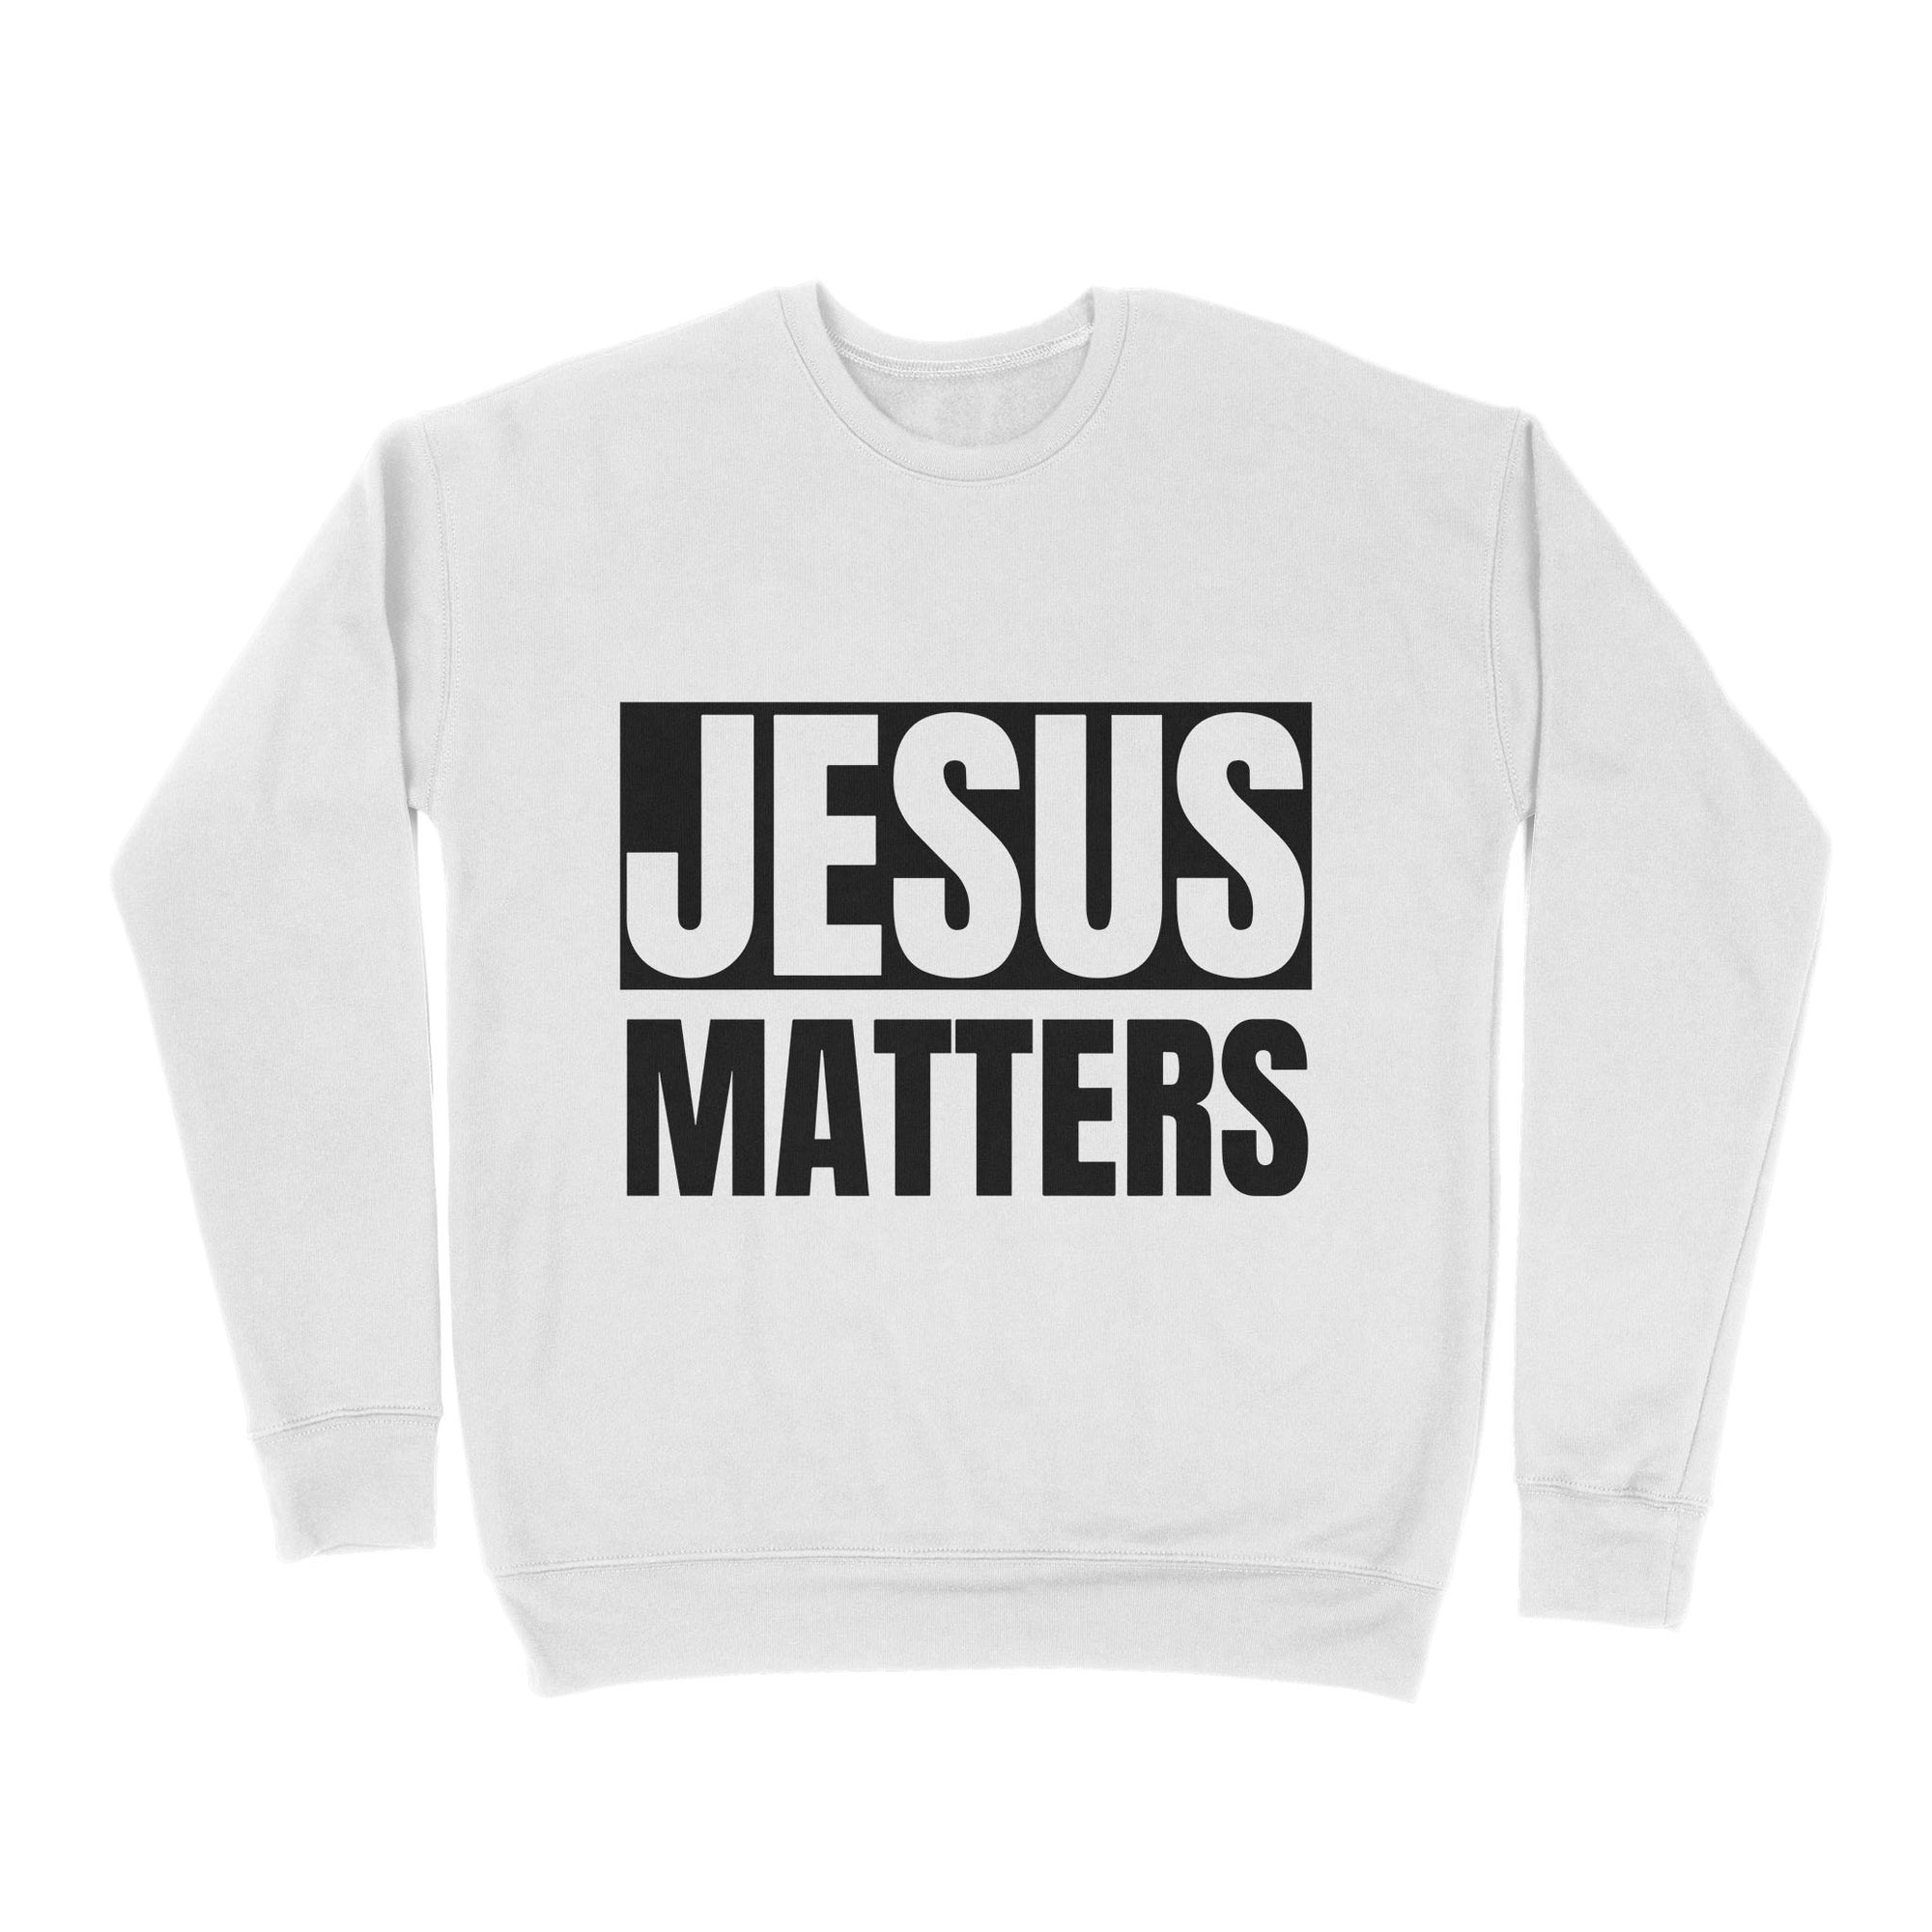 Premium Crew Neck Sweatshirt - Jesus Matters